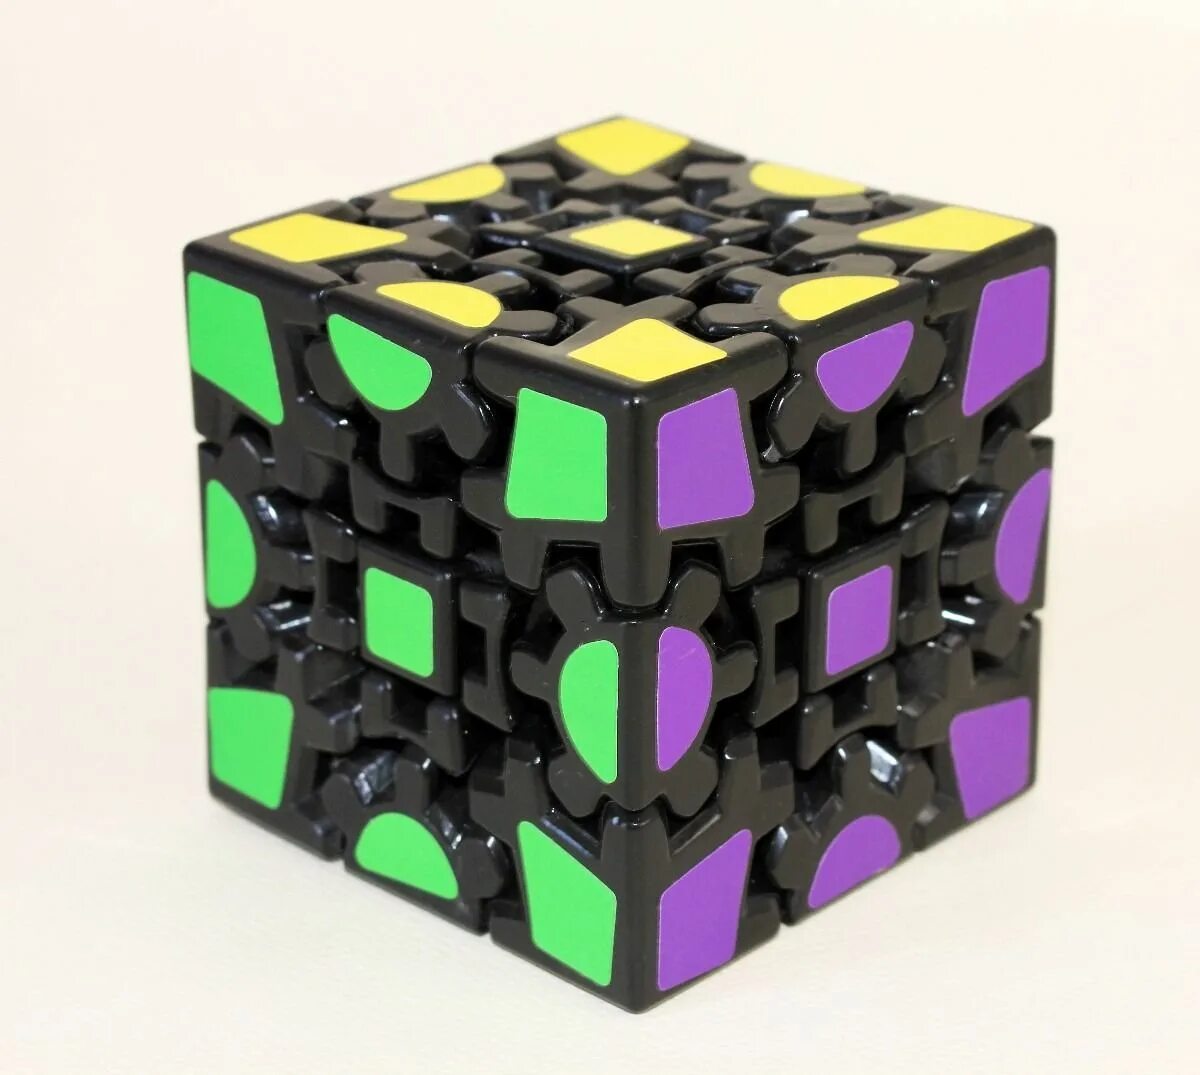 Включи рубик. Шестеренчатый кубик Рубика Cube Puzzle. Шестереночный кубик Рубика 3/3. Головоломка. Кубик Рубика/на шестеренках nrub007. Лин Кьюб кубик.